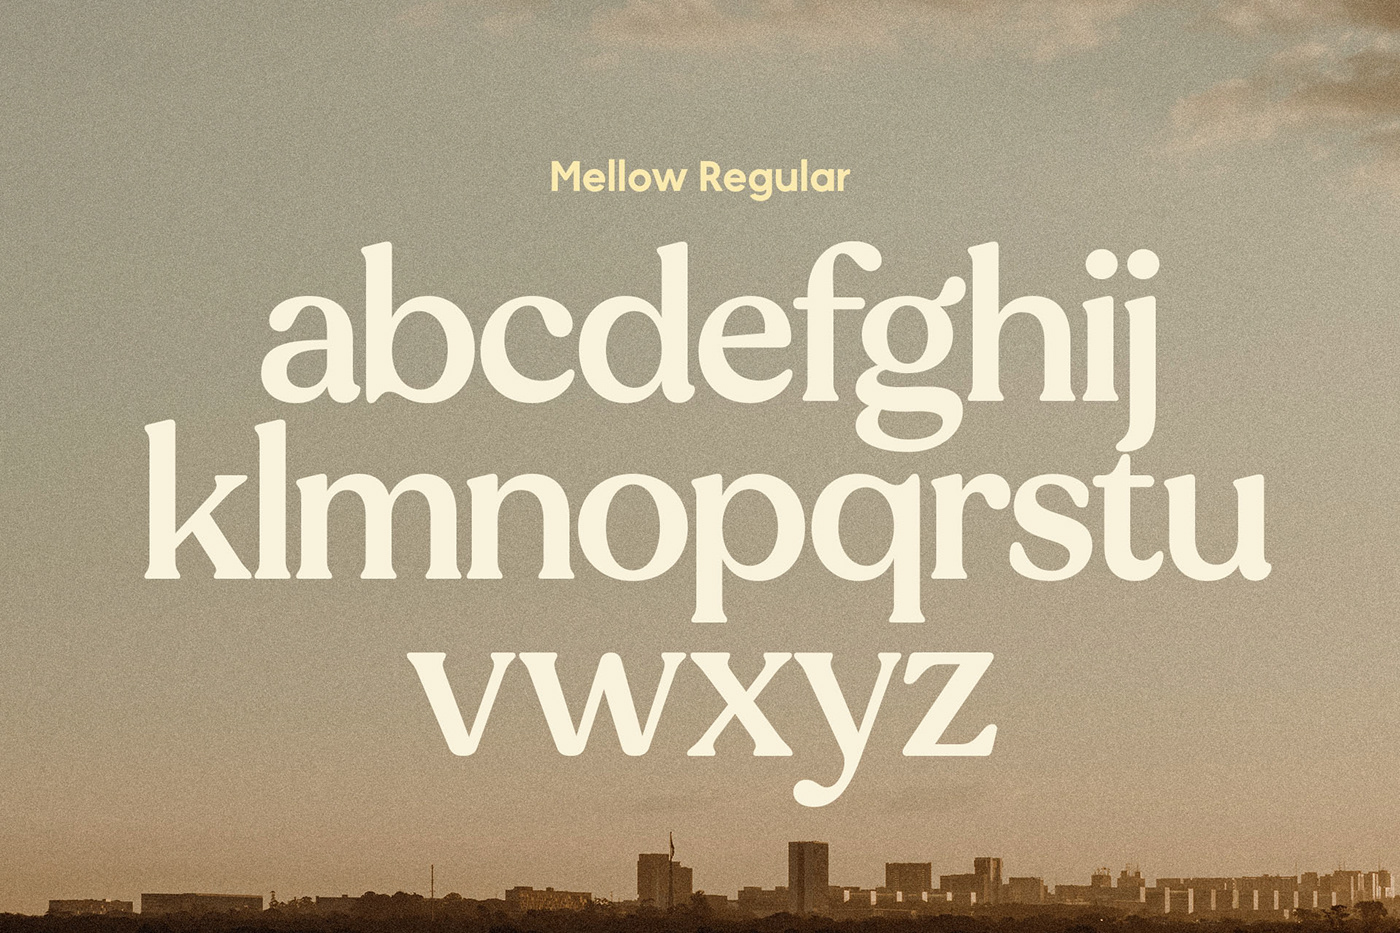 Display free Latin logo modern multilingual Retro serif vintage софт  